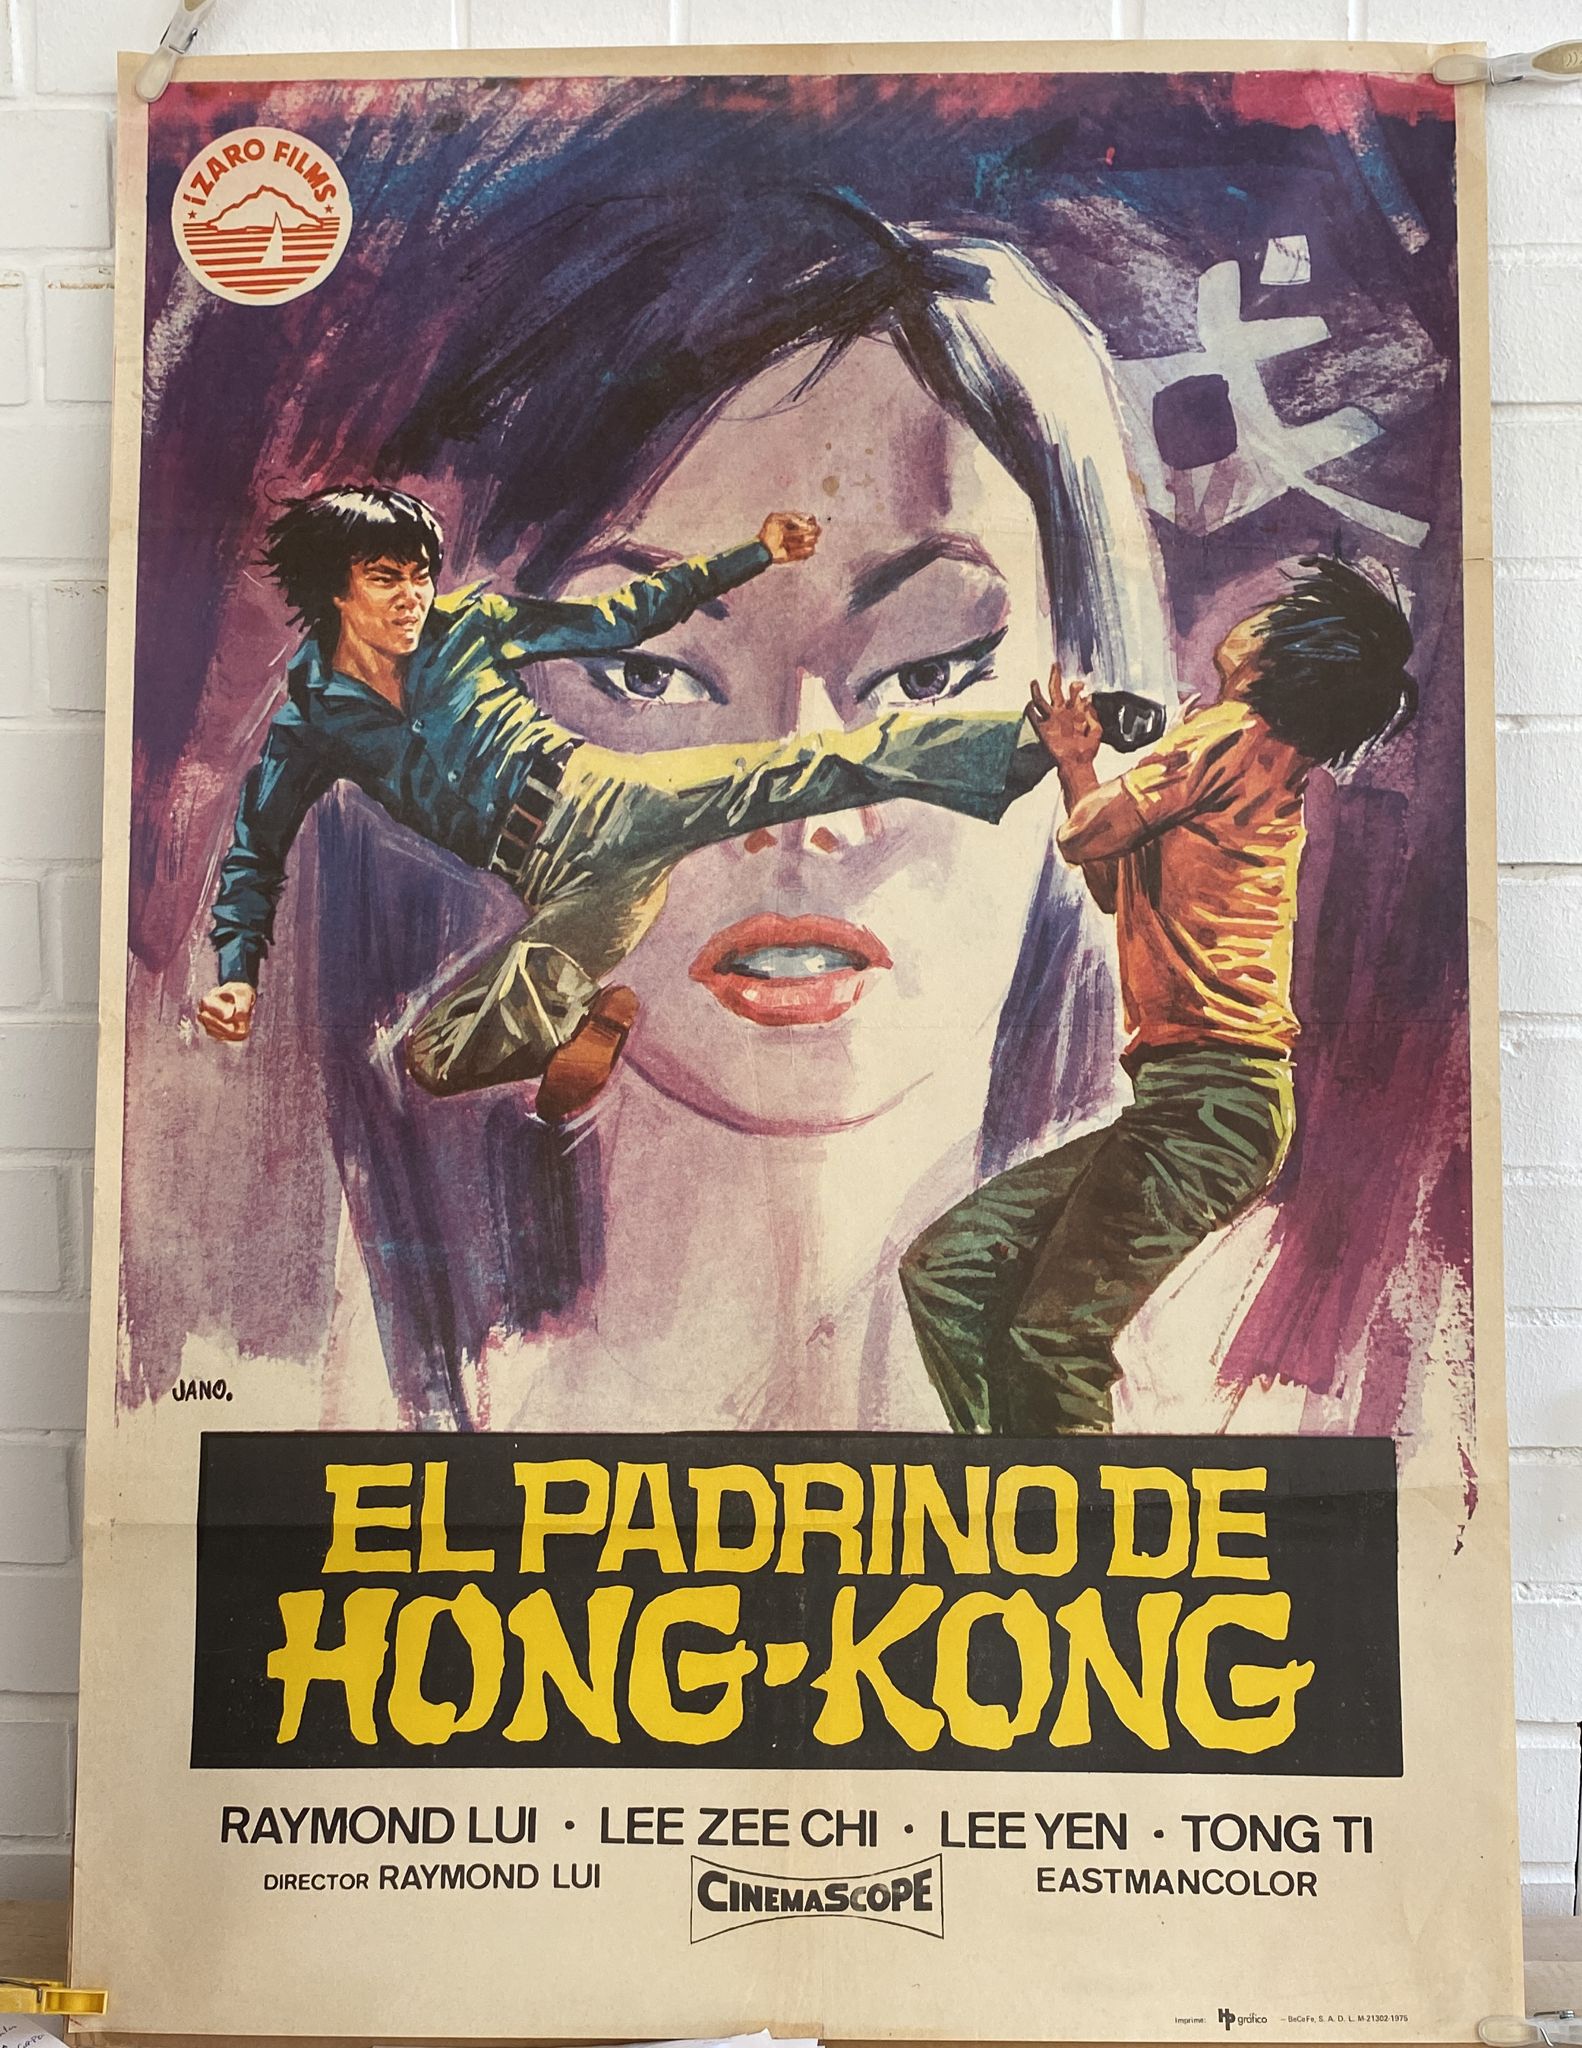 El Padrino de Hong-Kong. Cartel (100x70) de Estreno, 1975